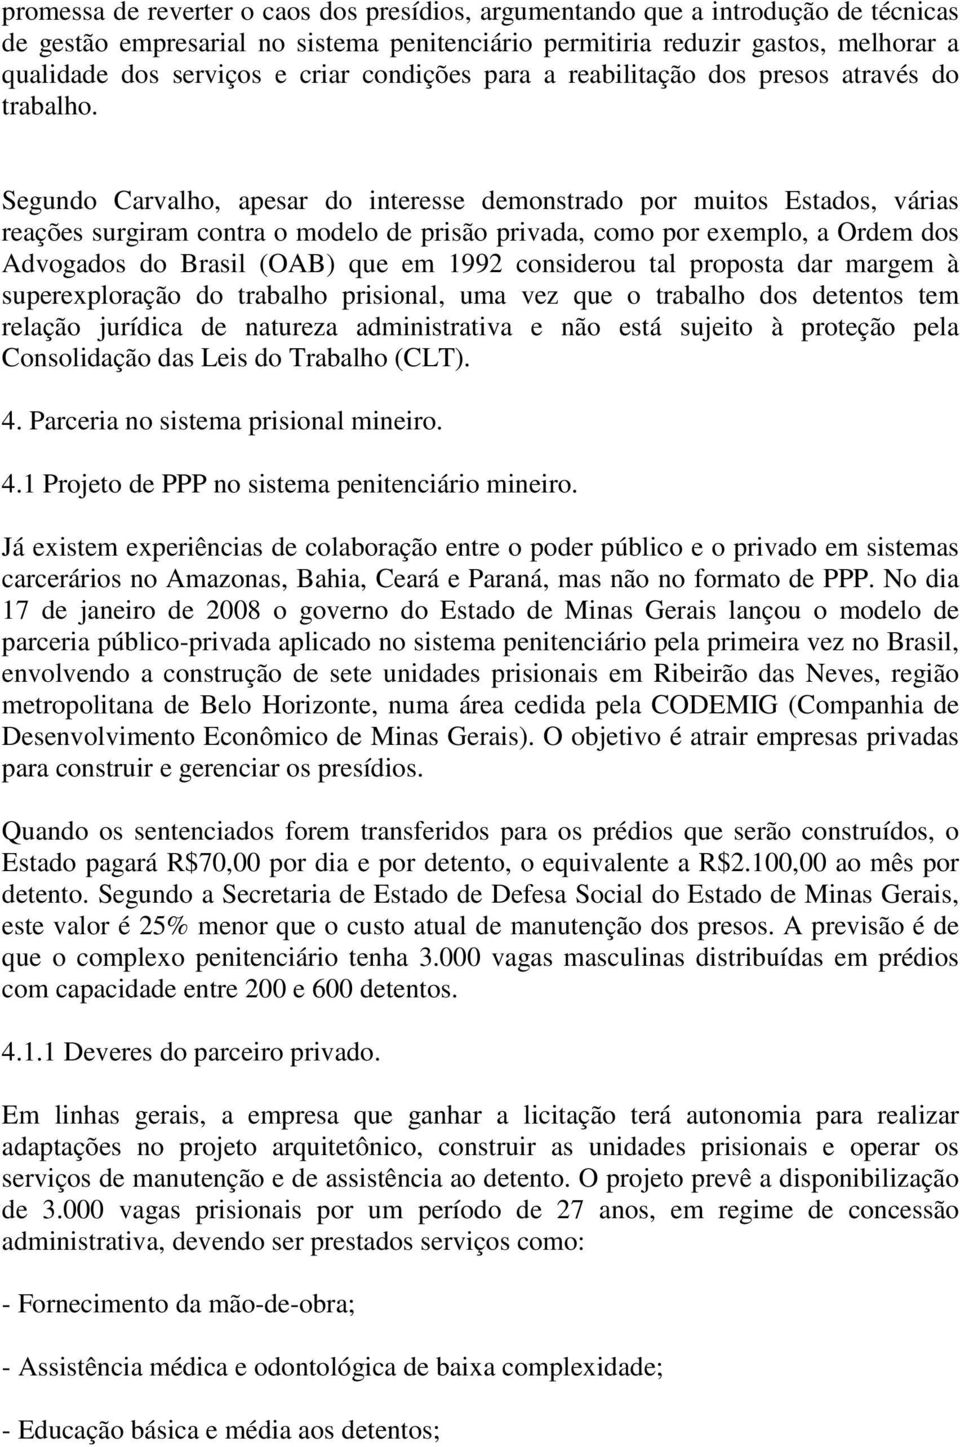 Segundo Carvalho, apesar do interesse demonstrado por muitos Estados, várias reações surgiram contra o modelo de prisão privada, como por exemplo, a Ordem dos Advogados do Brasil (OAB) que em 1992